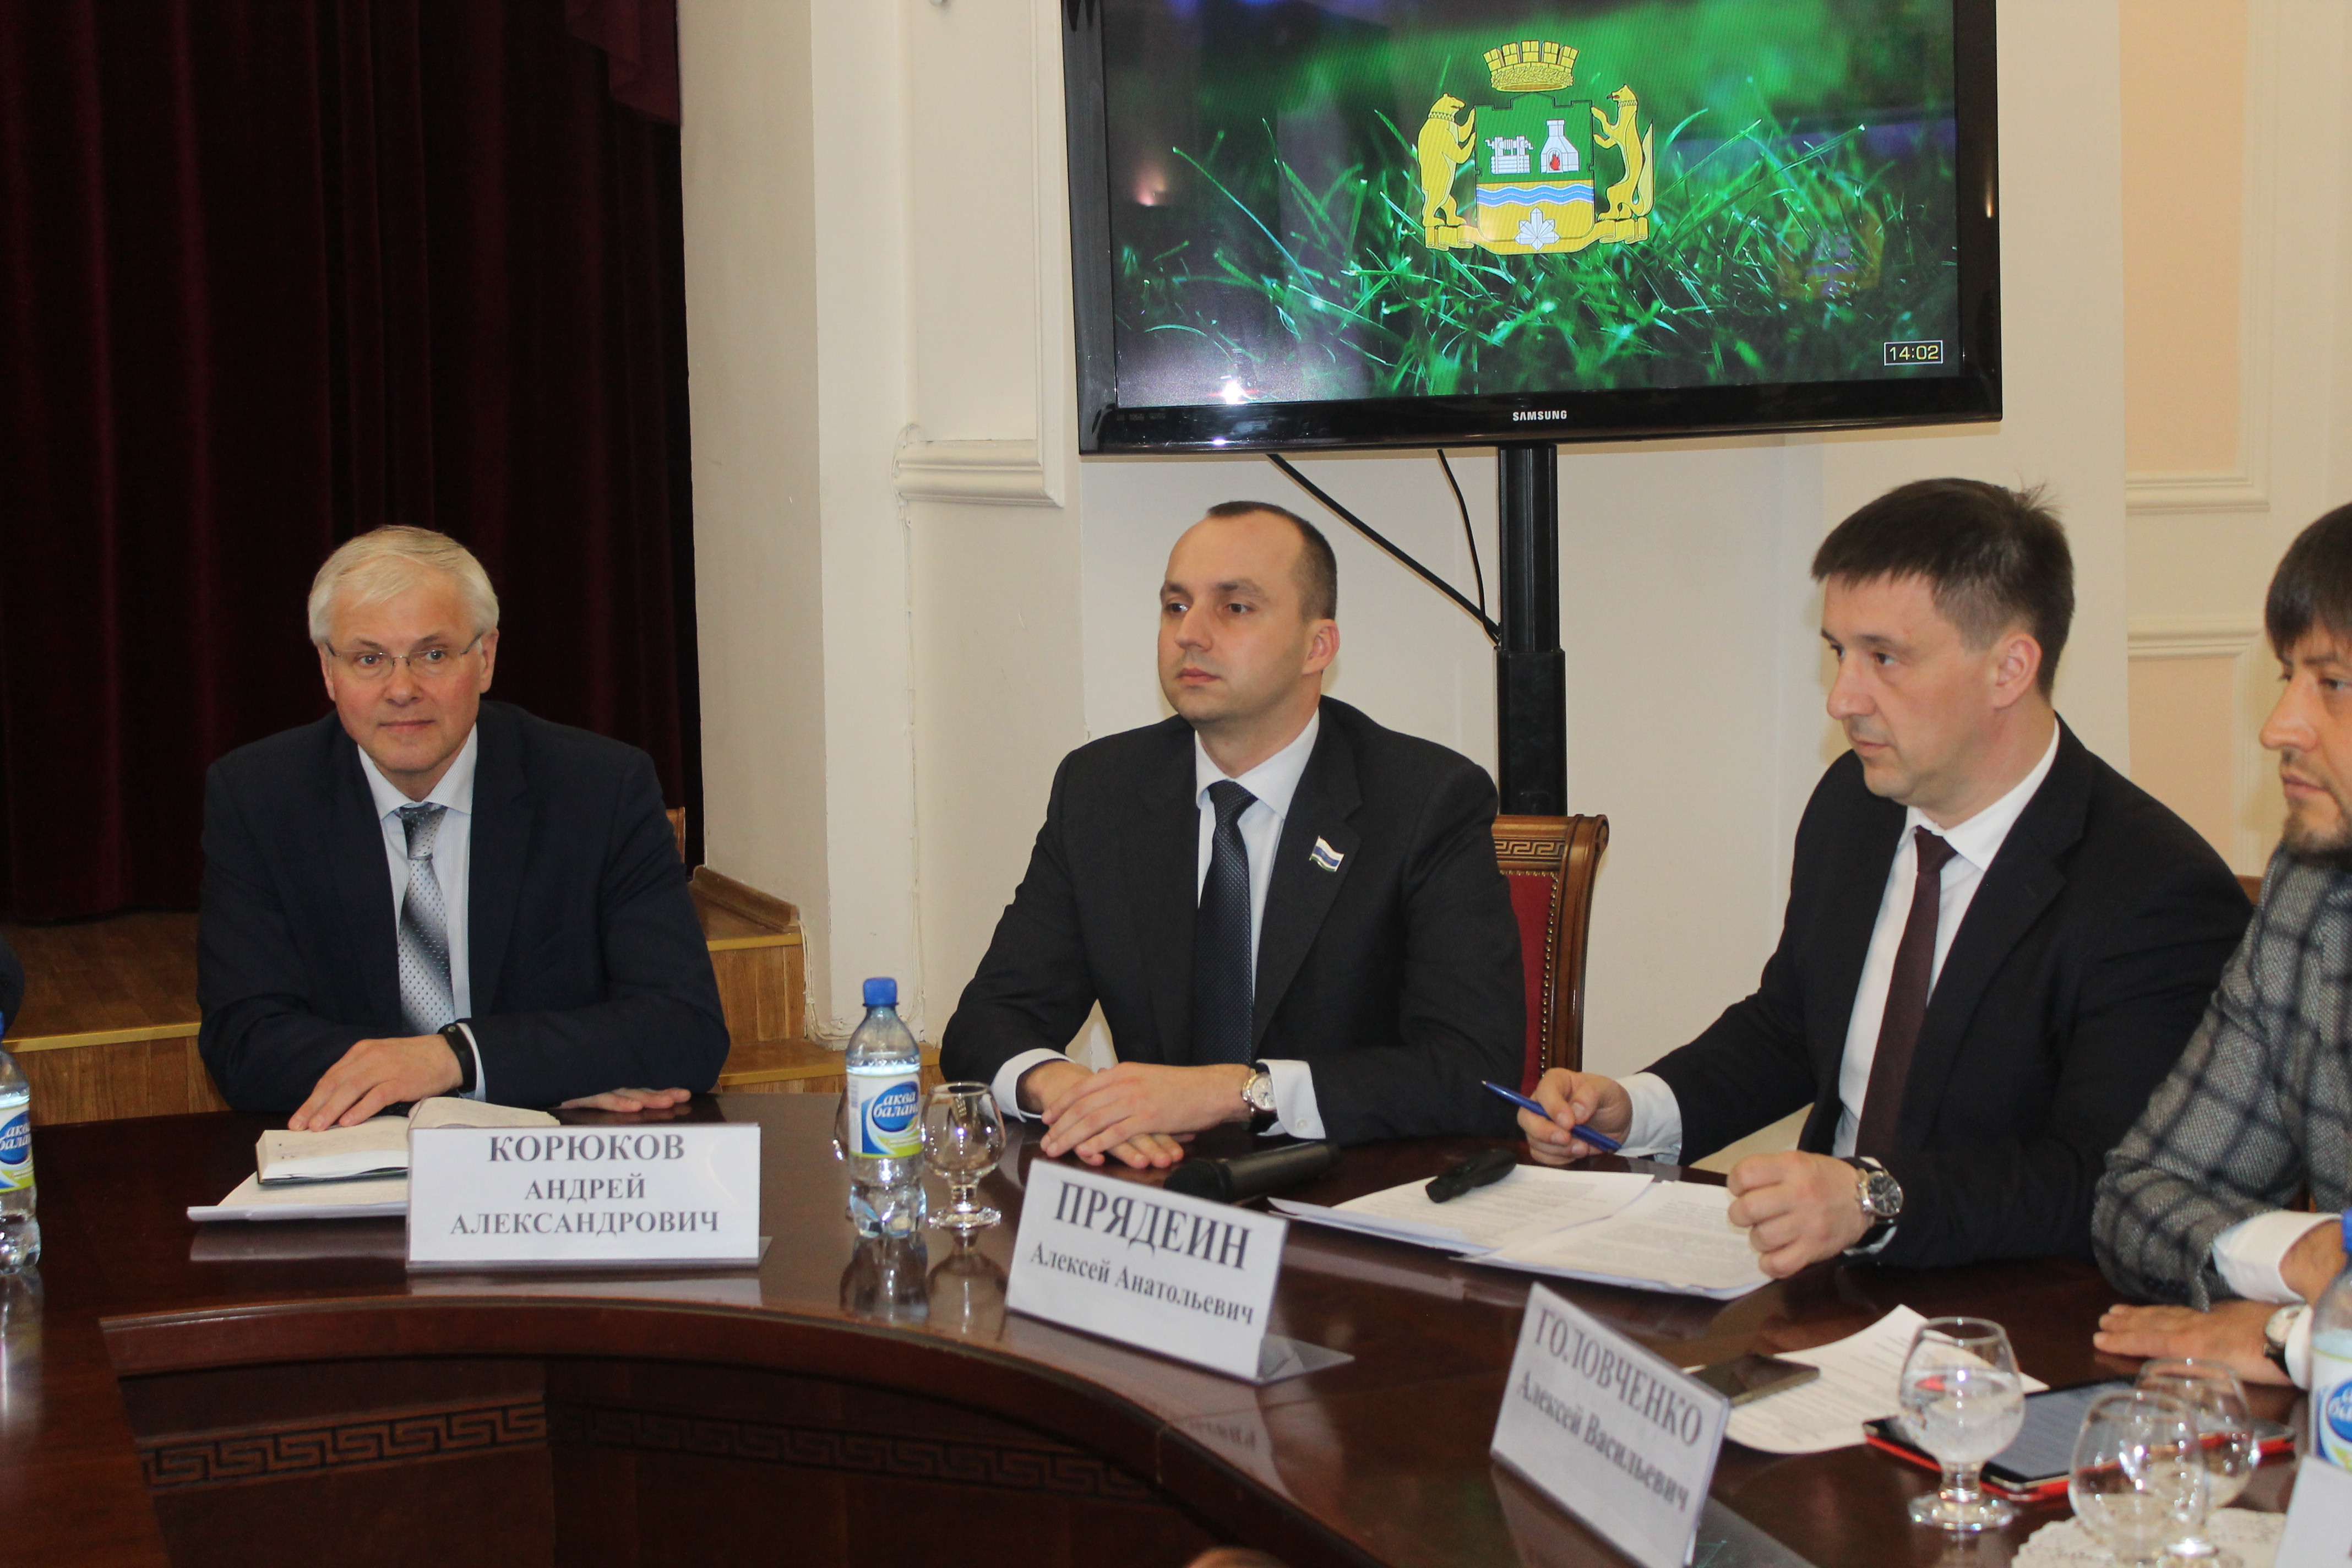 Михаил Клименко: Стратегия Екатеринбурга делает один из основных акцентов на развитии городской среды